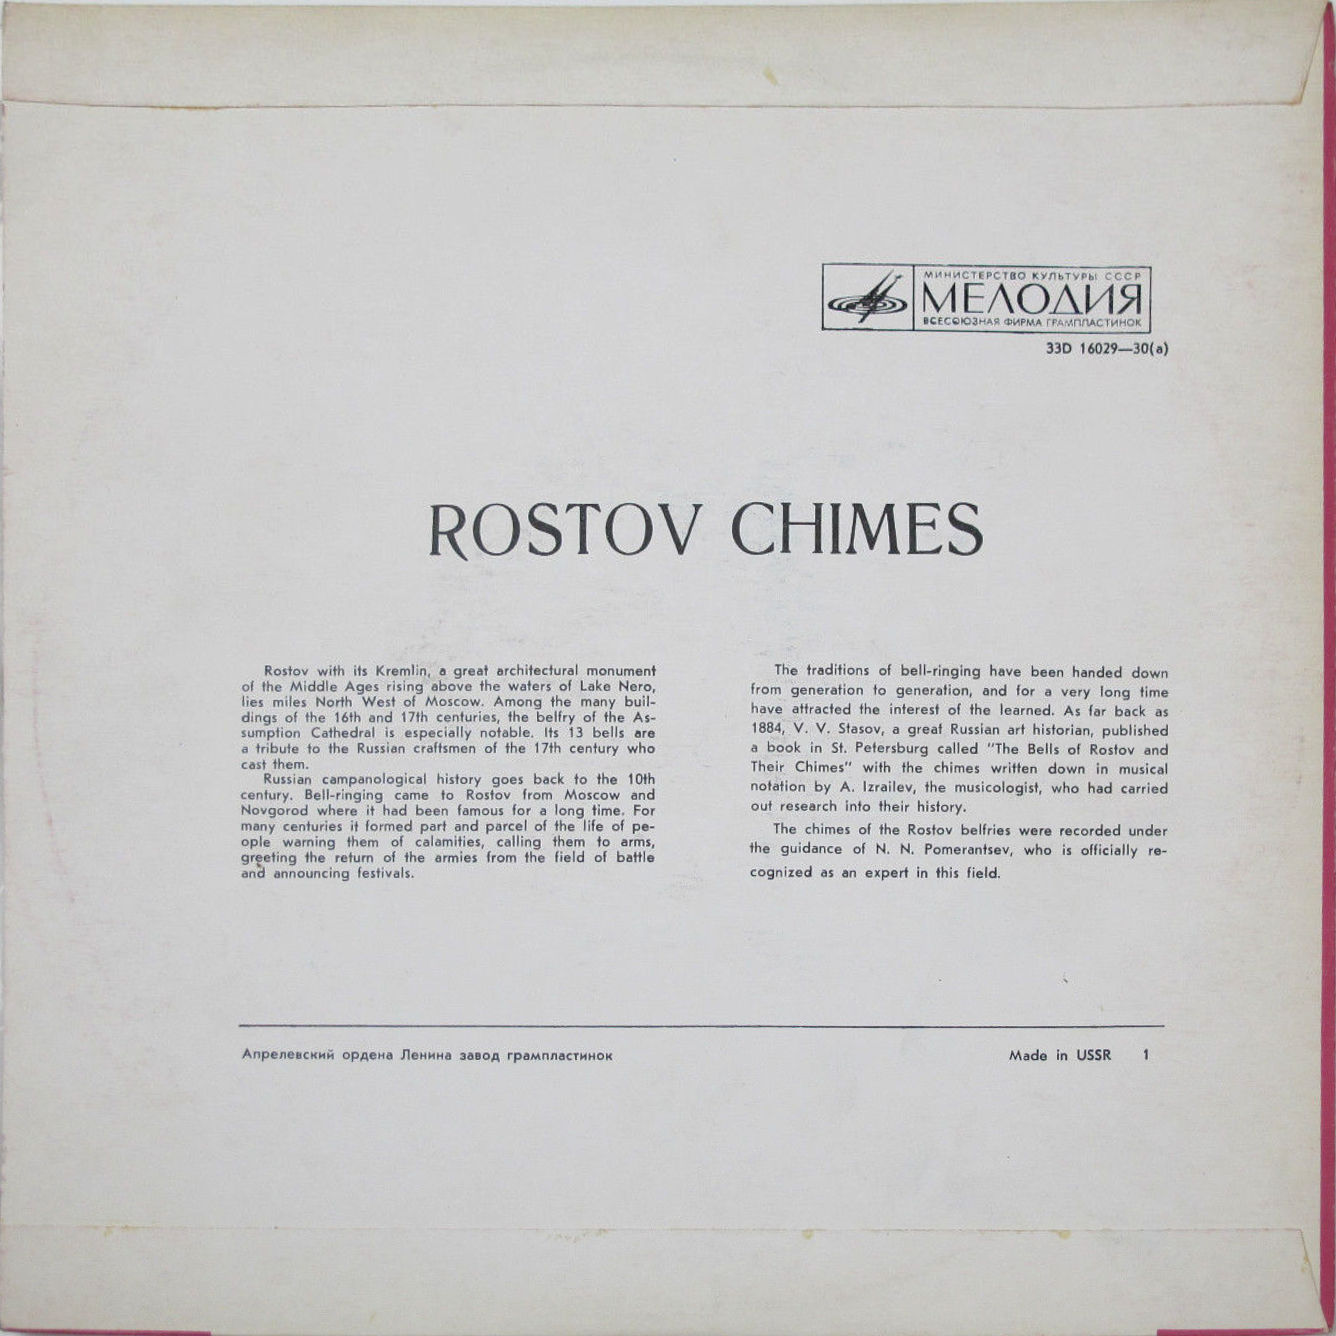 Ростовские звоны (Rostov Chimes)